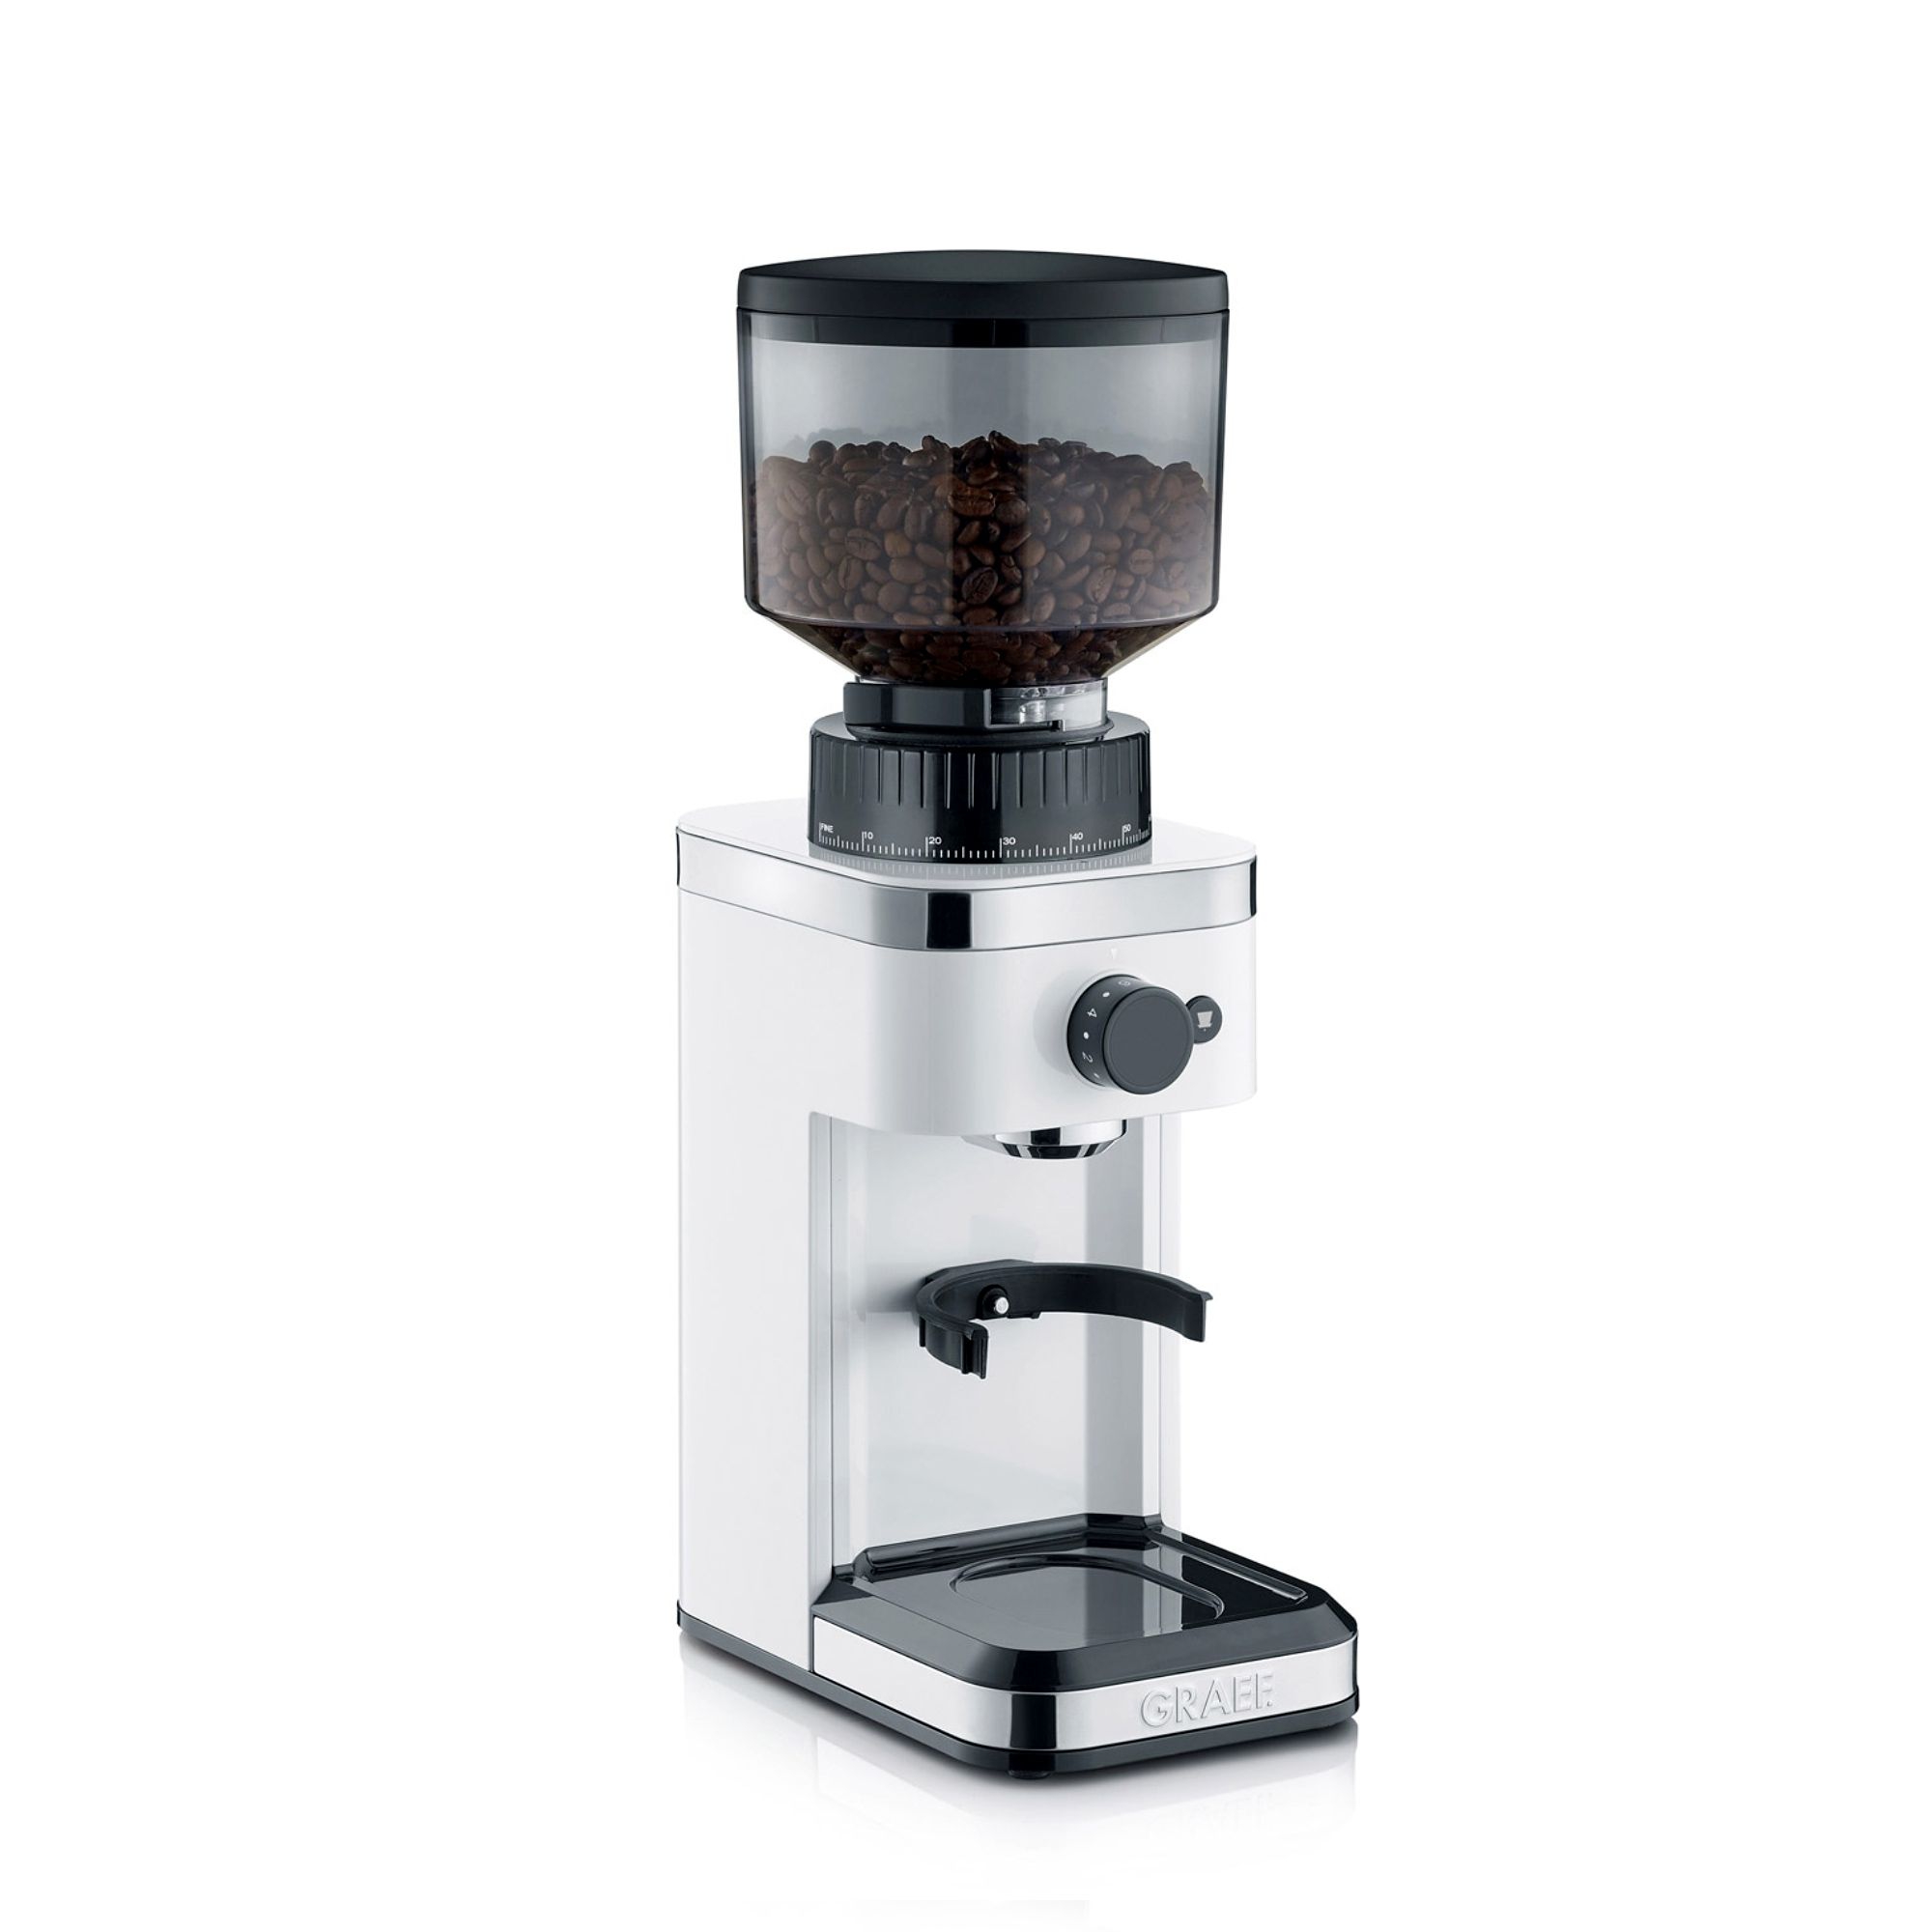 Graef - Coffee grinder - CM 501